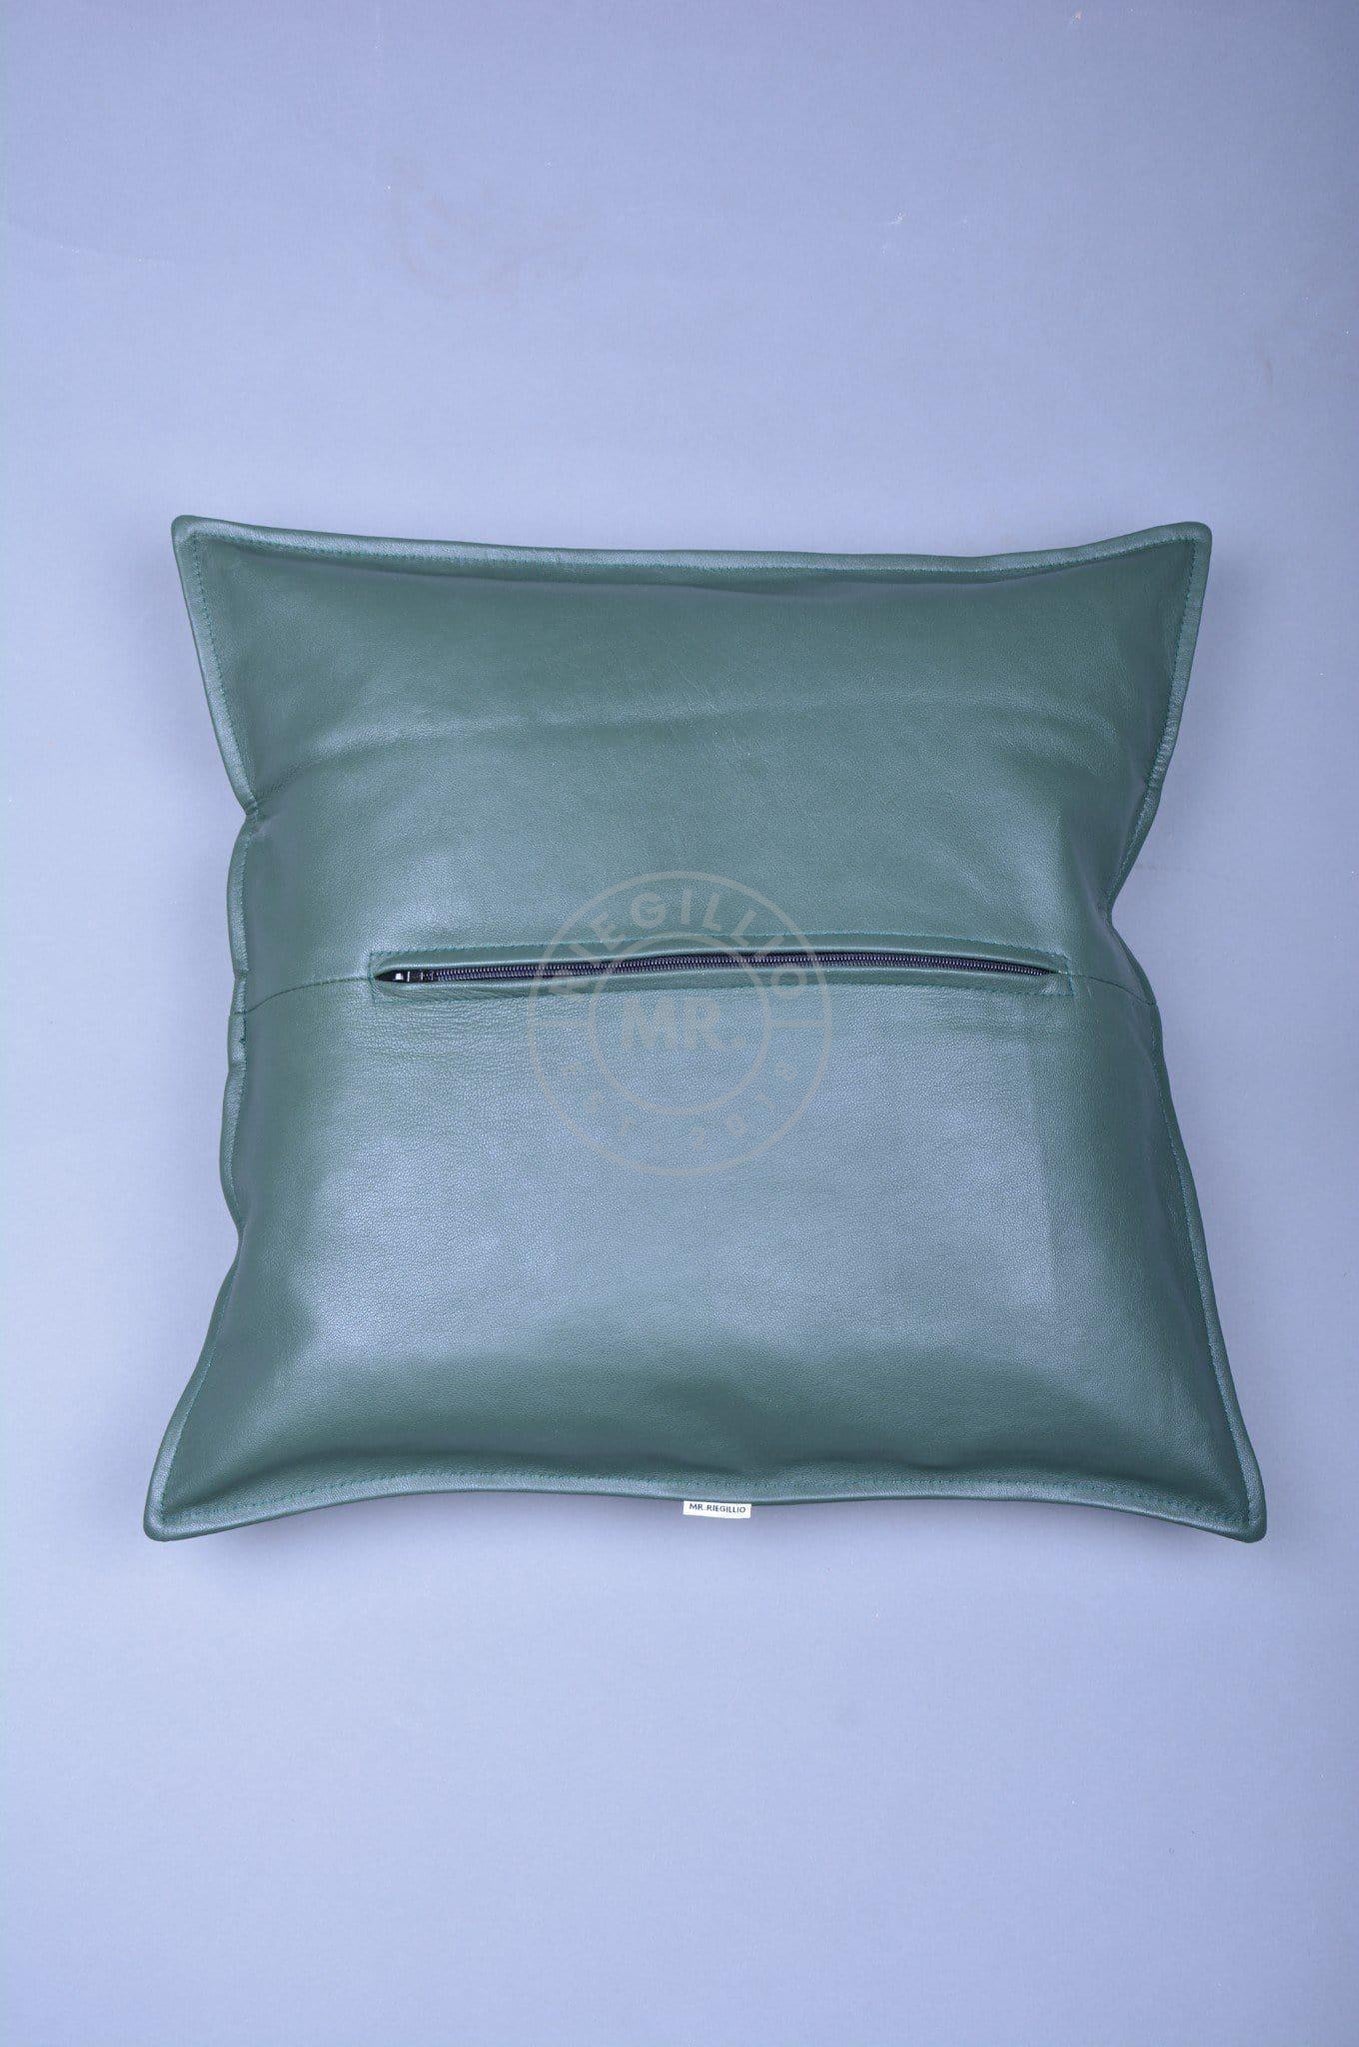 Dark Green Leather Pillow at MR. Riegillio